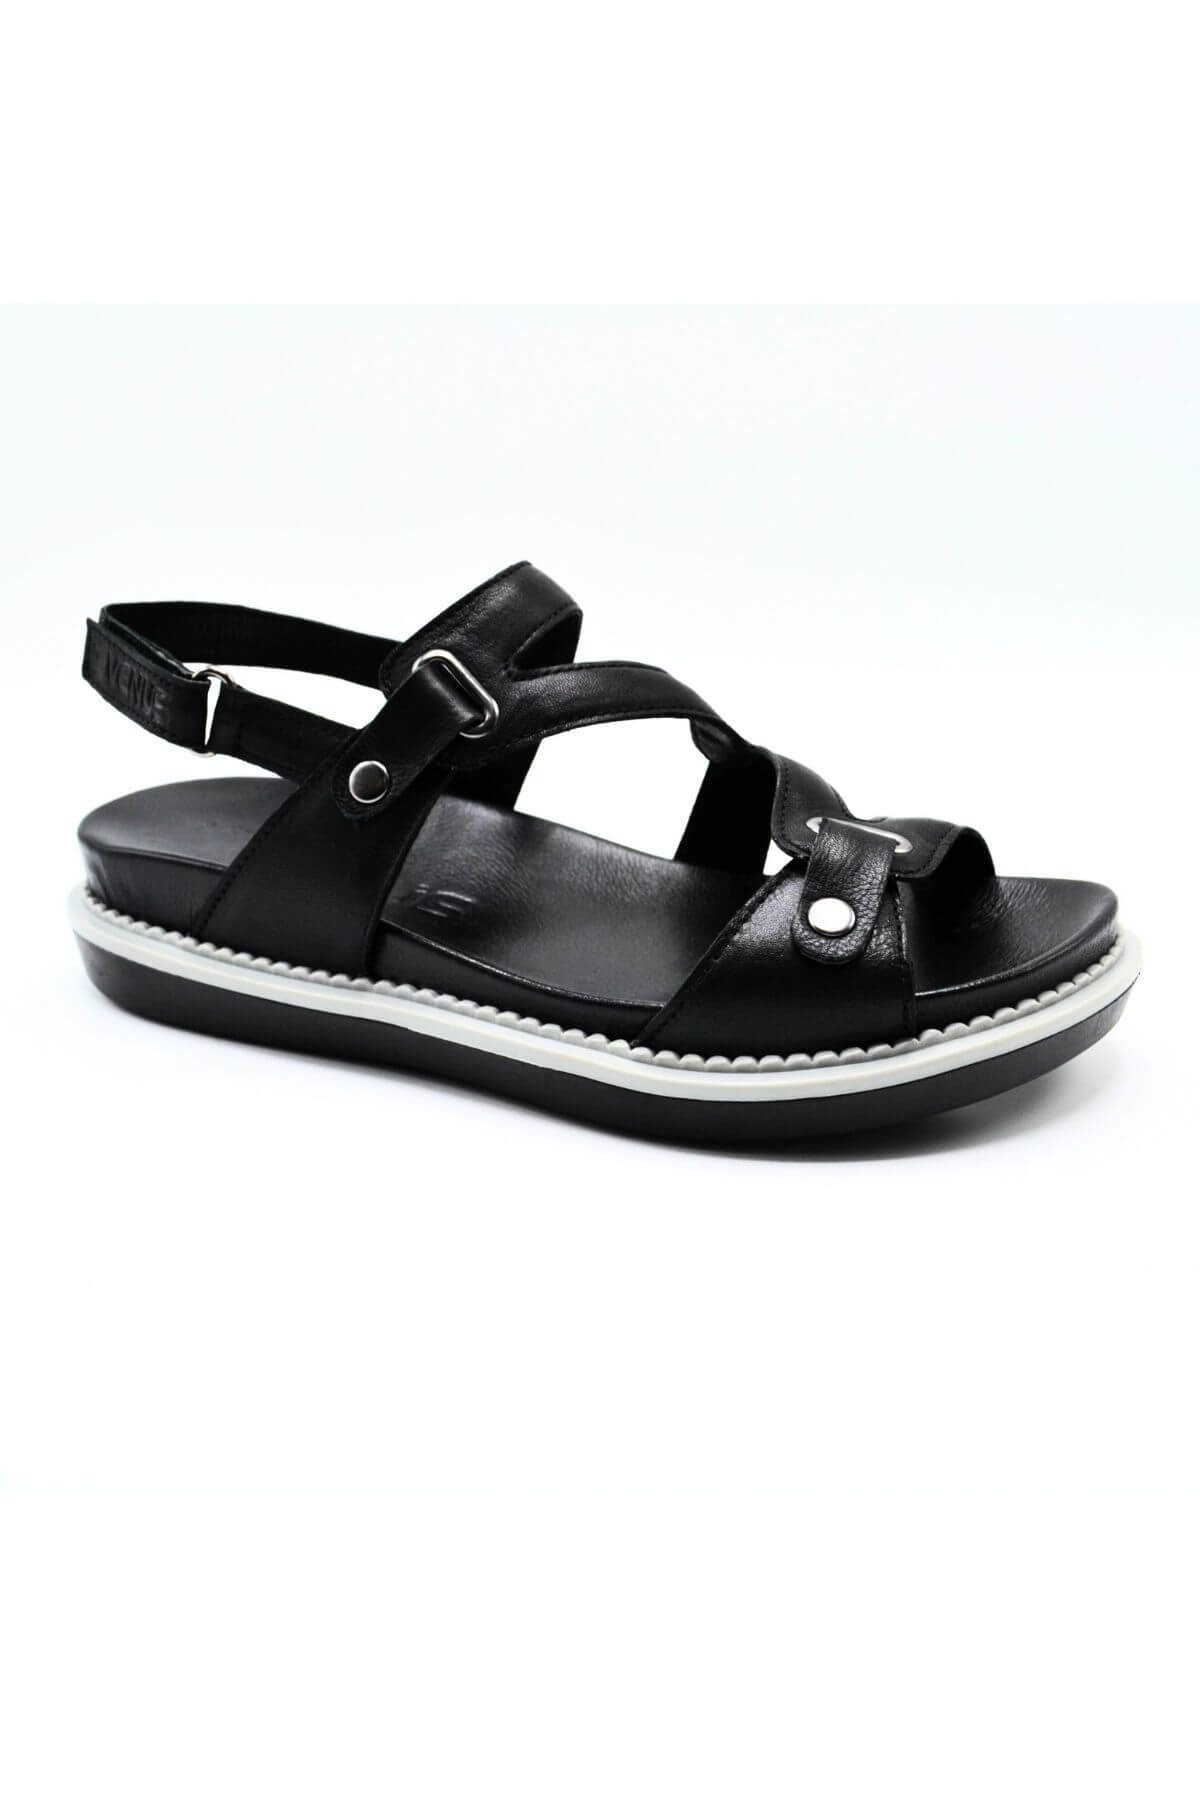 Kadın Comfort Deri Sandalet Siyah 202090Y